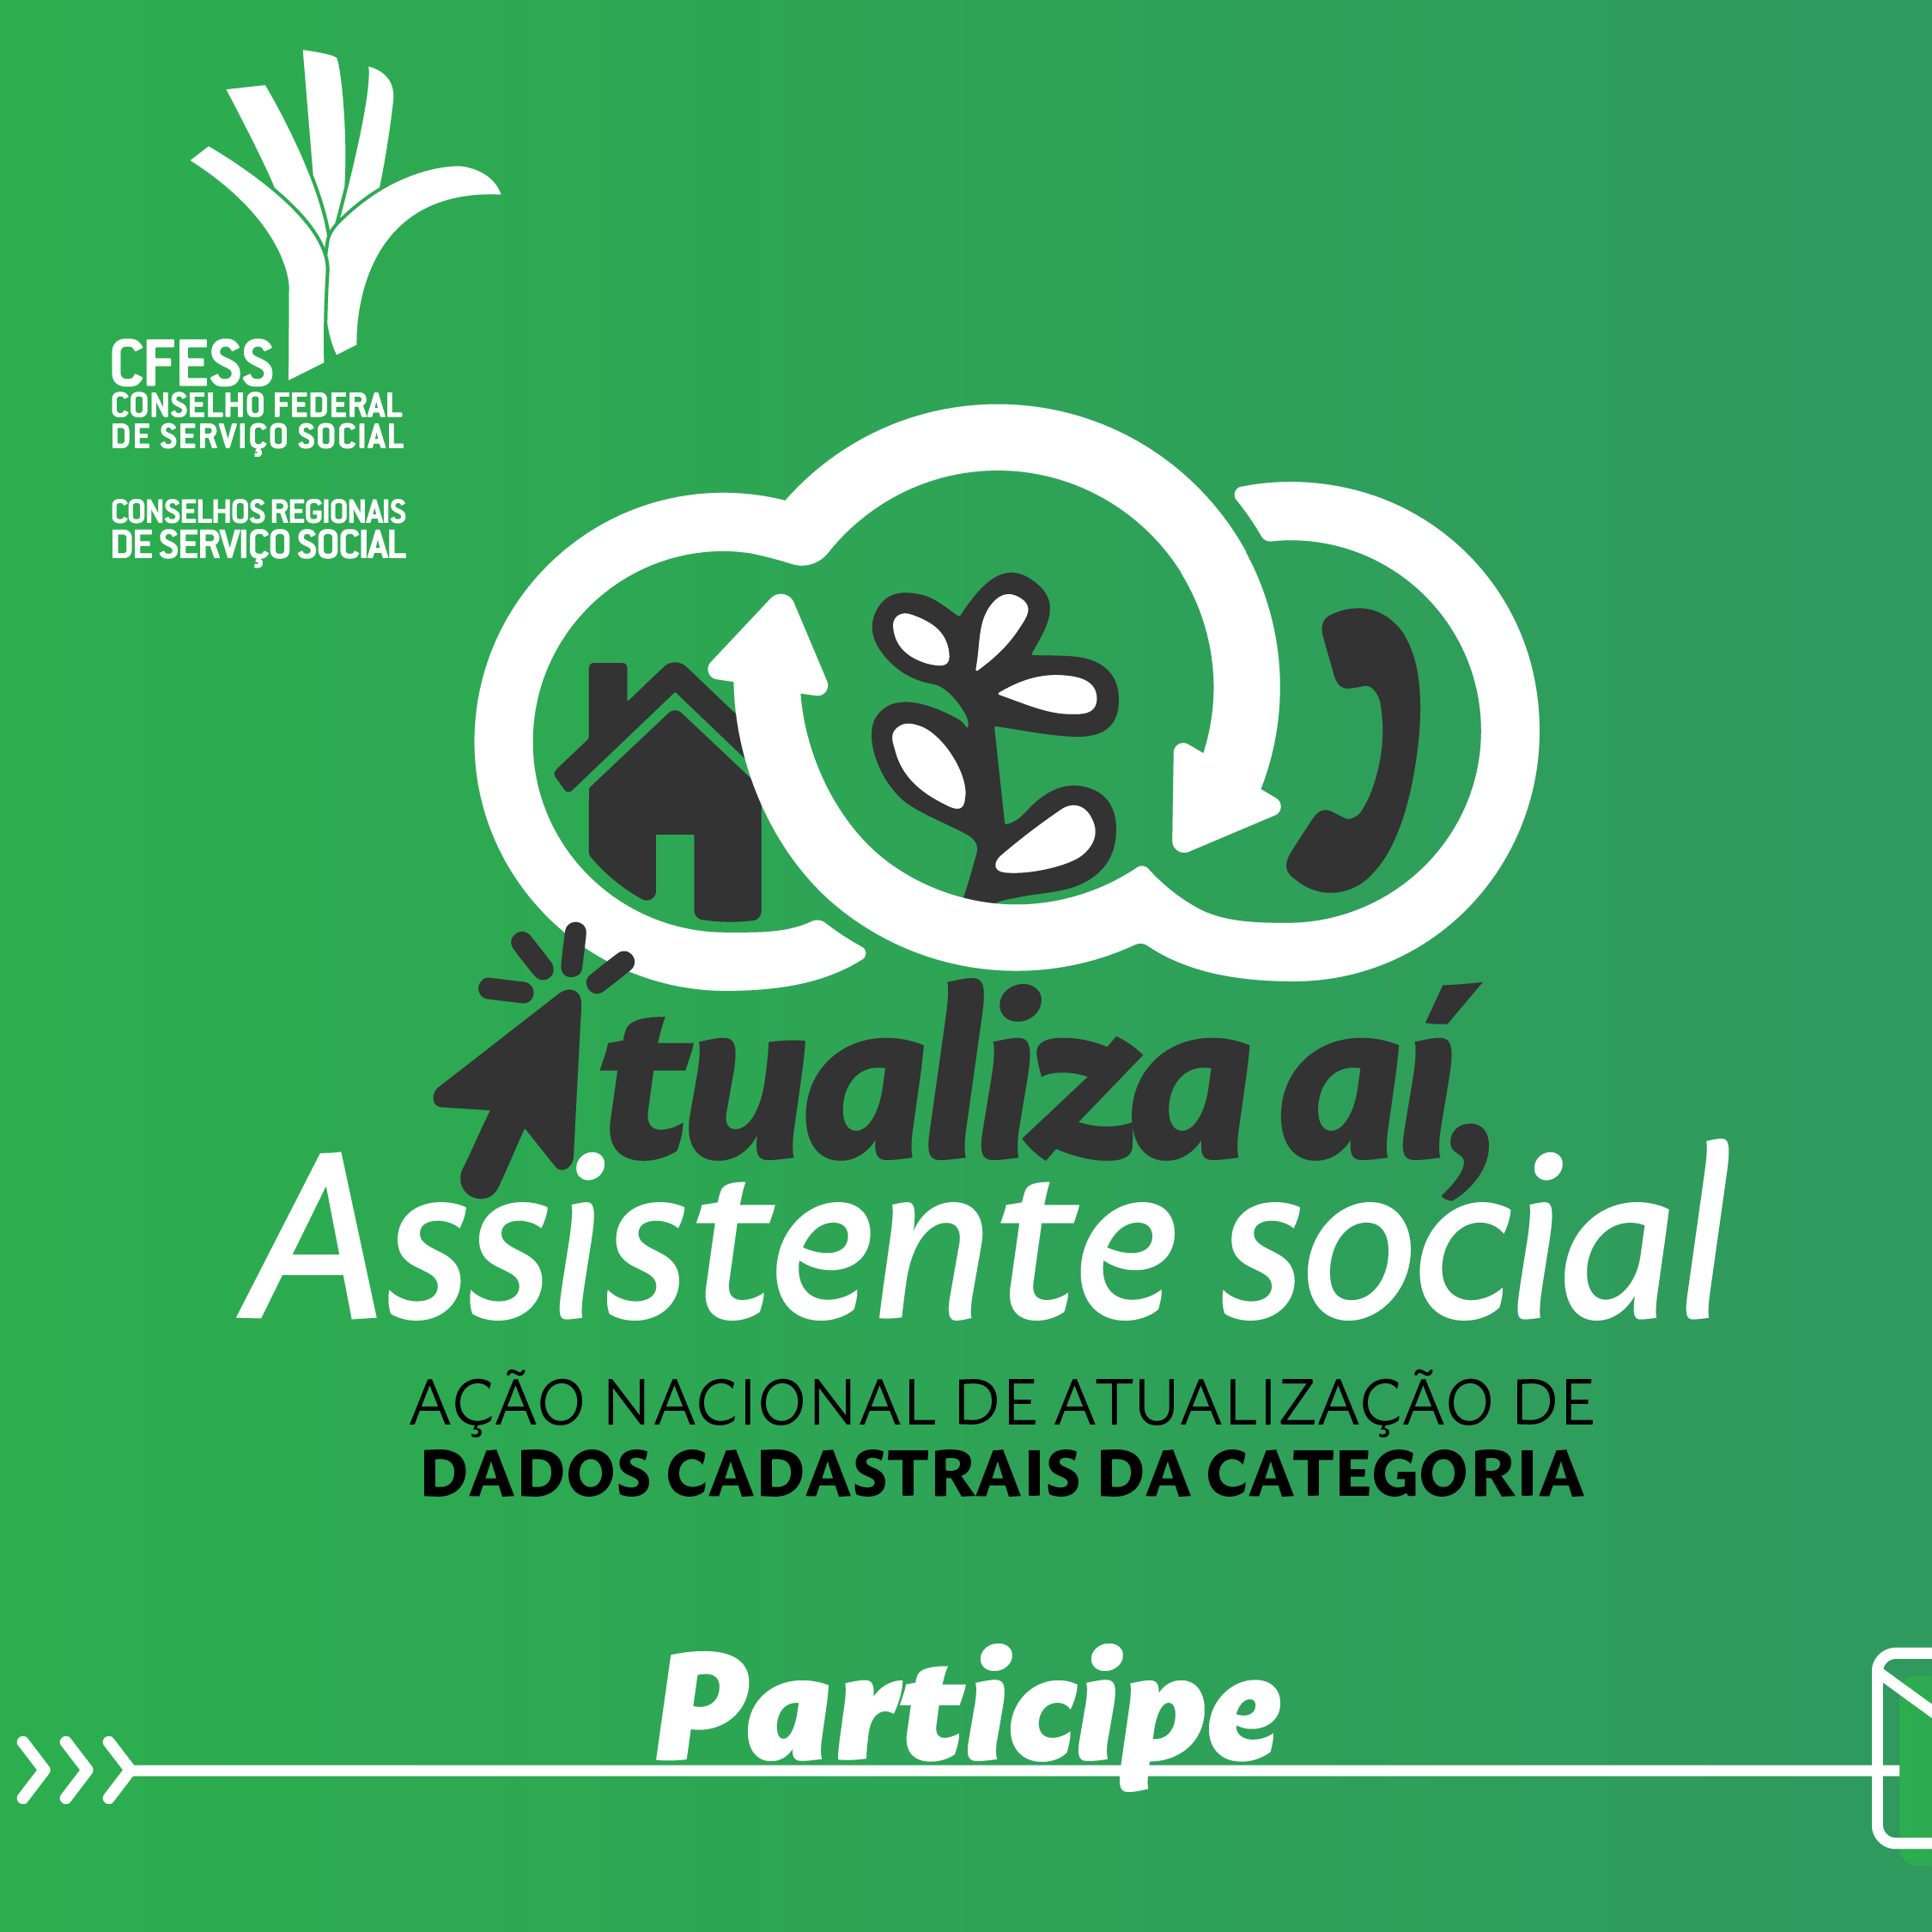 CRESS-BA divulga programação em comemoração ao Dia da/o Assistente Social;  confira